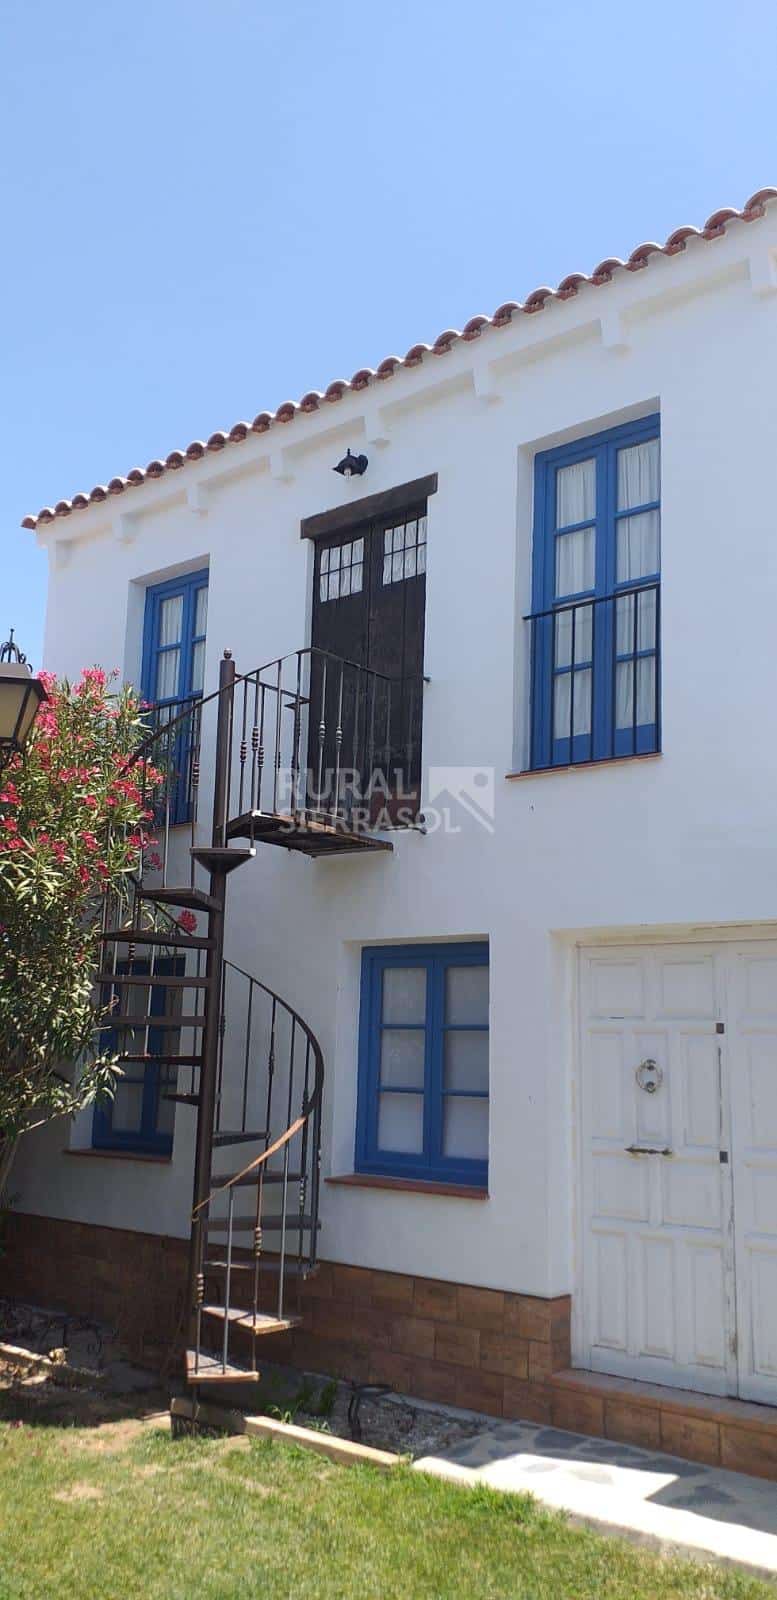 Escalera de caracol de casa rural en Villamartín (Cádiz) referencia 4092